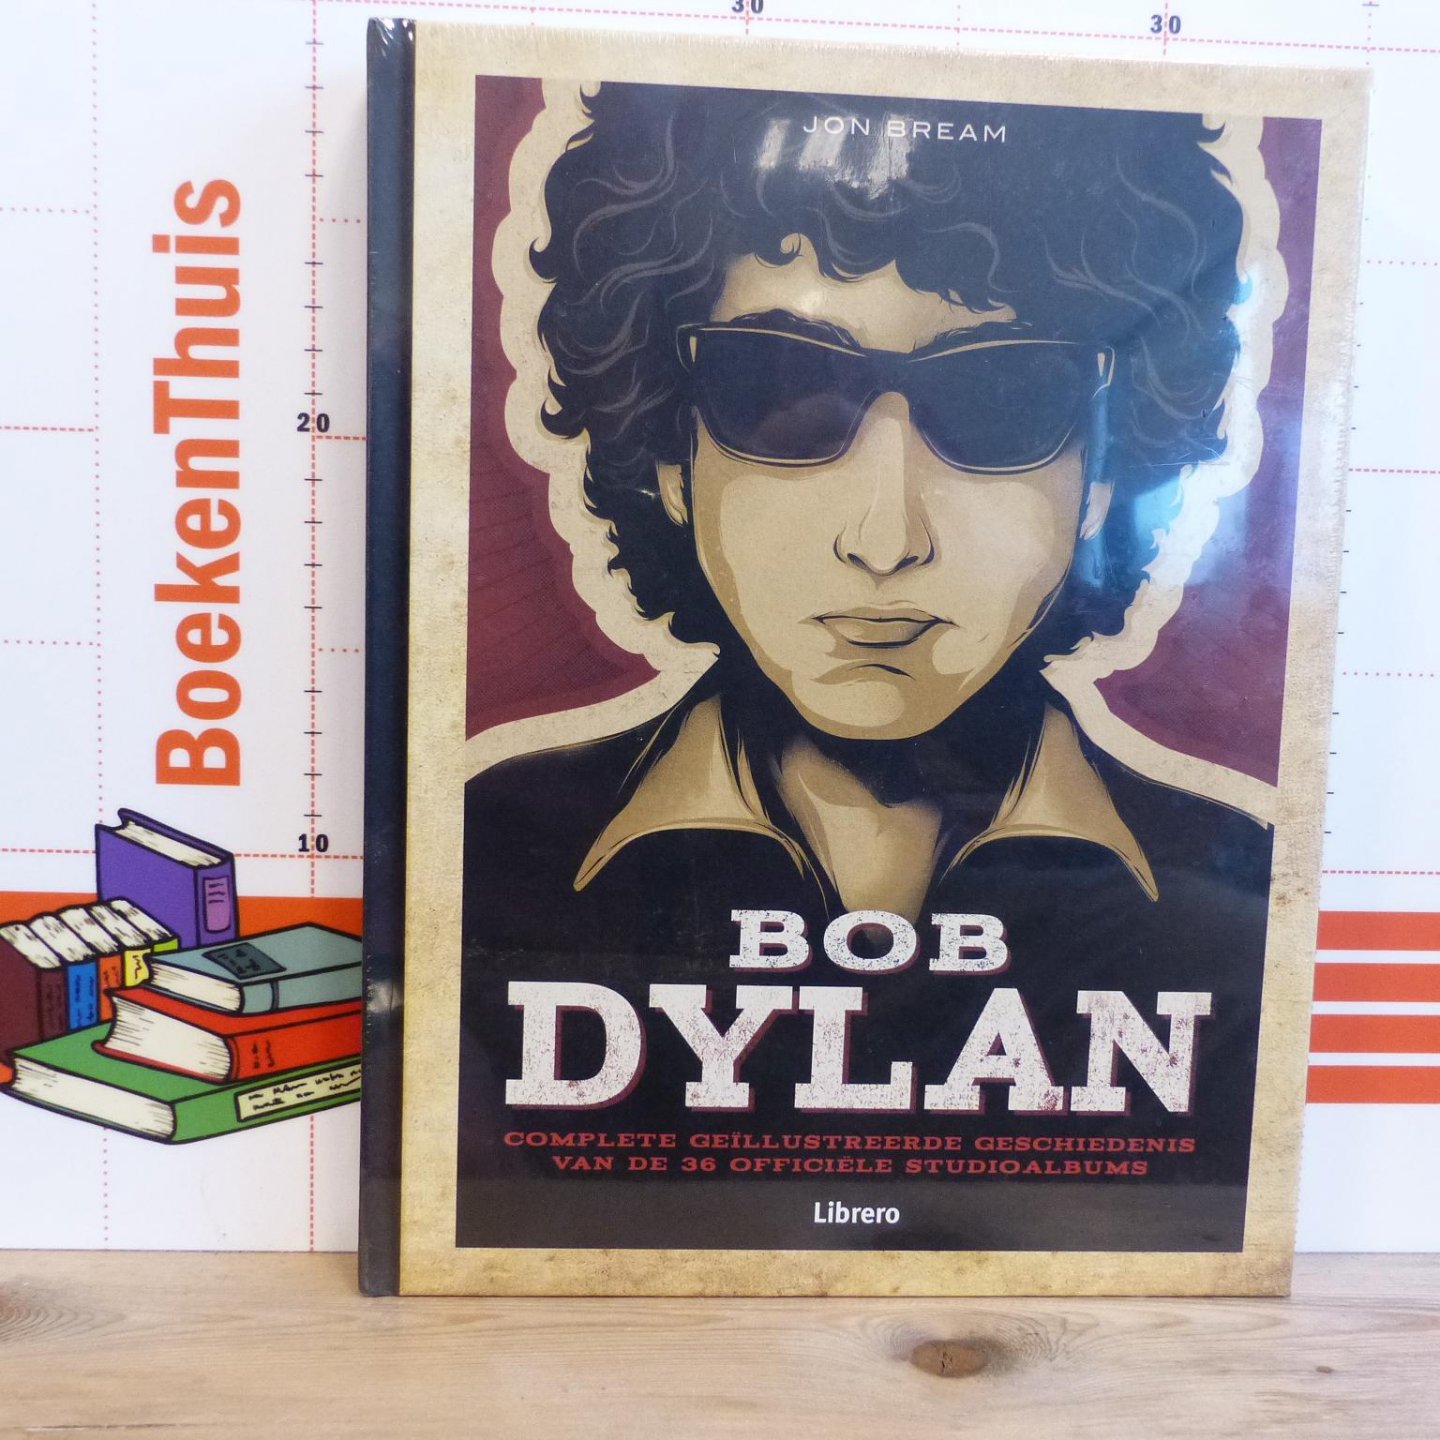 Bream, Jon - Bob Dylan, complete geillustreerde geschiedenis van de 36 officiele studio albums